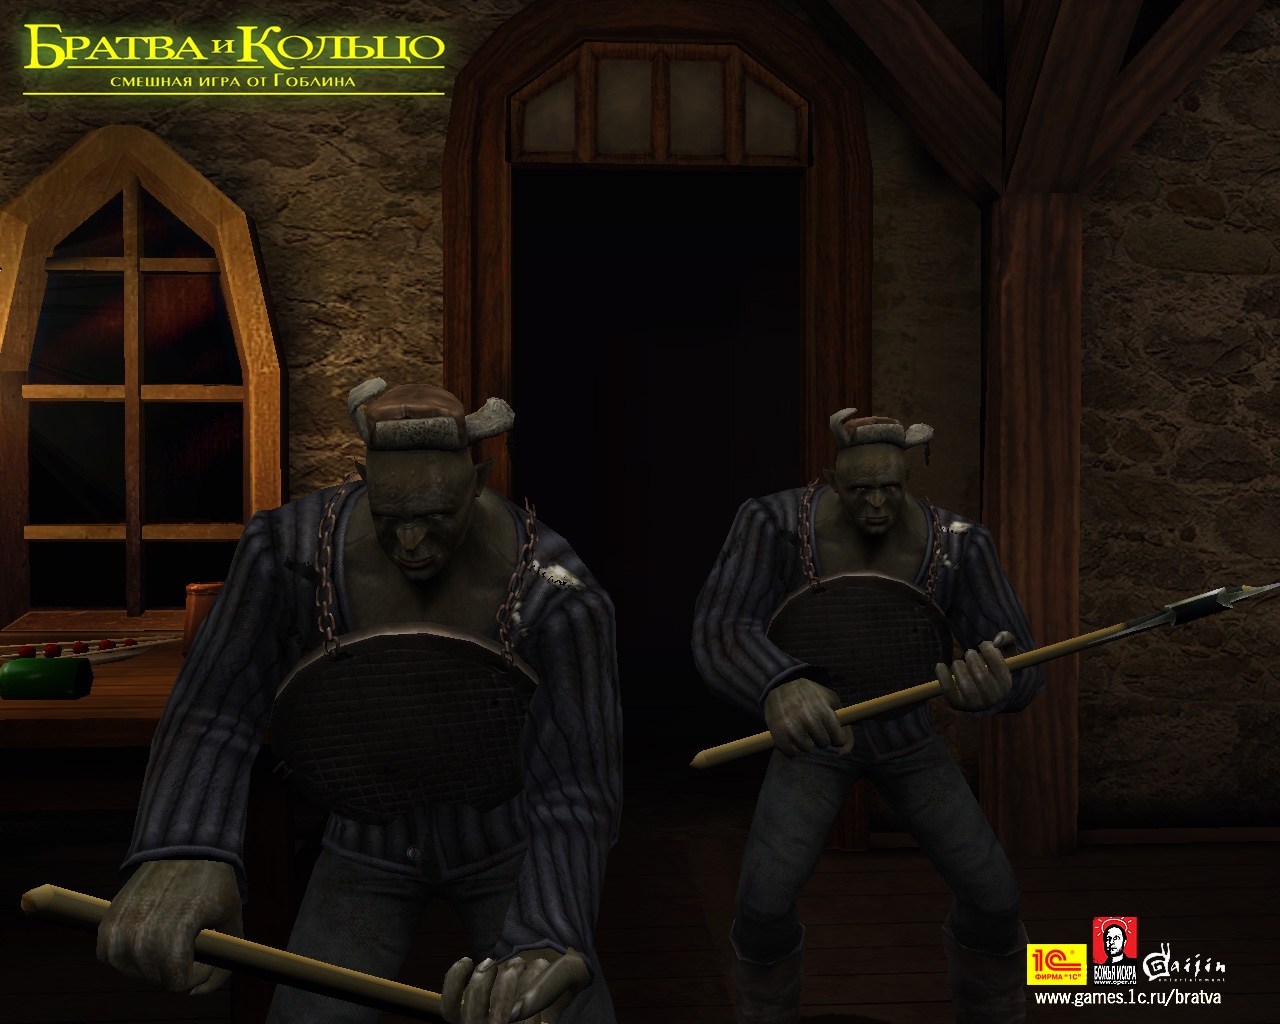 Скриншот из игры Братва и Кольцо под номером 1